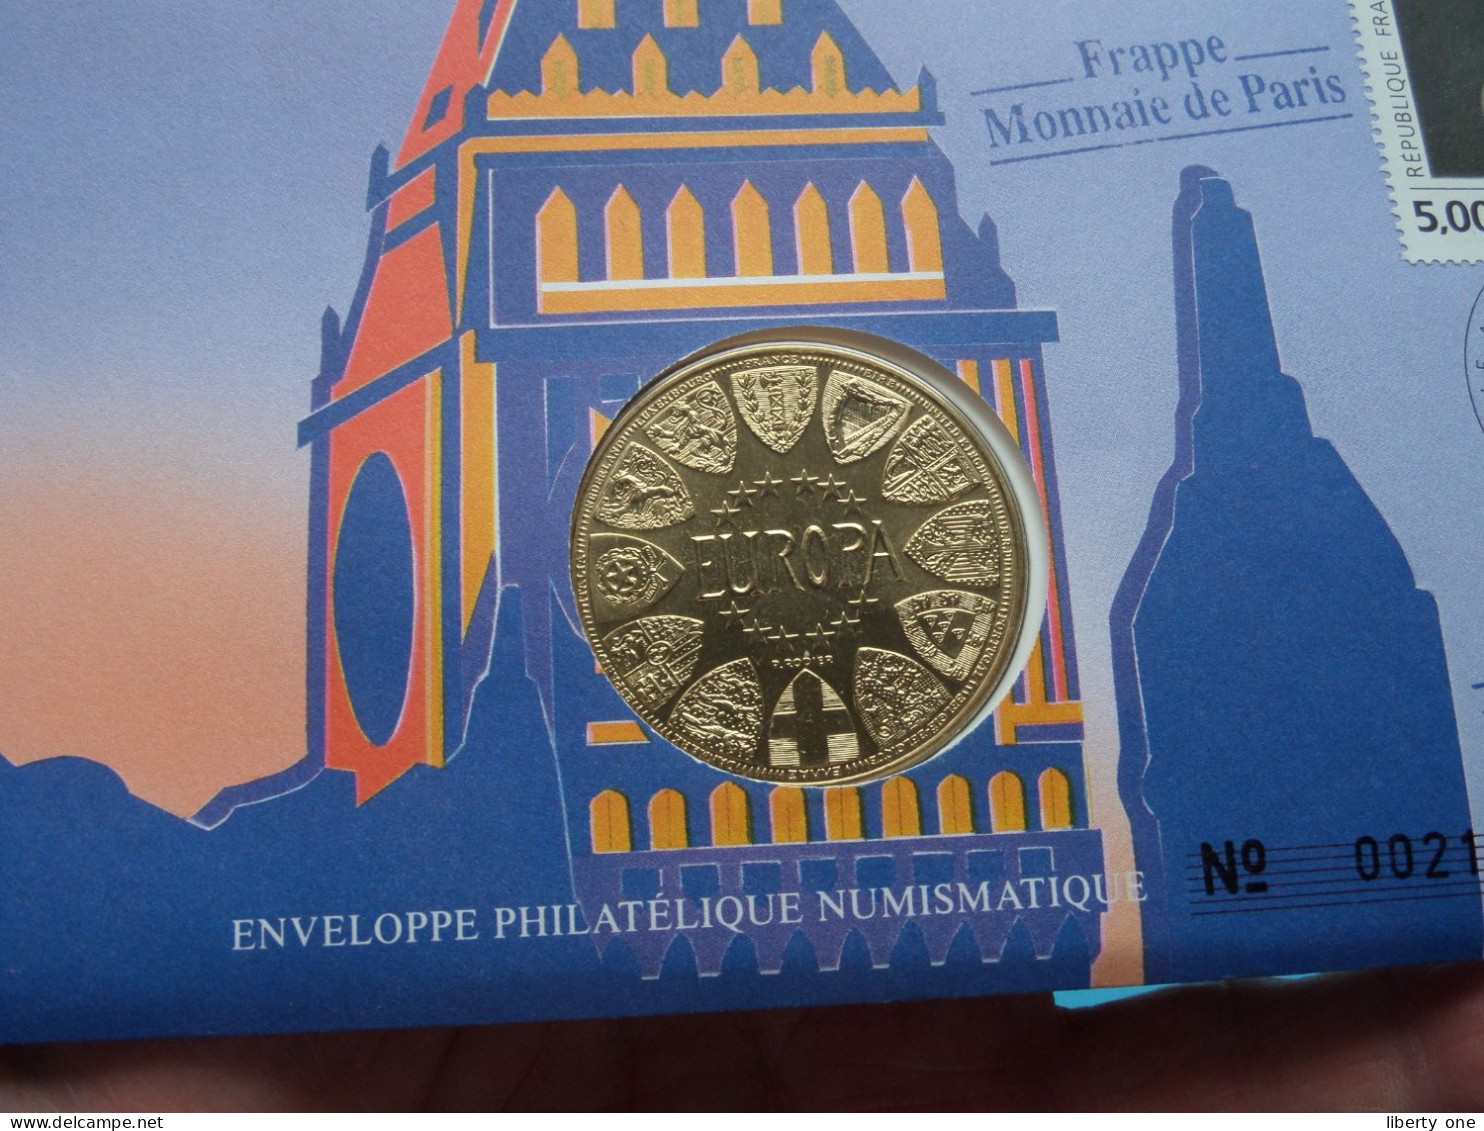 EUROPA - GRANDE BRETAGNE ( Voir Scans ) Enveloppe Numismatique Monnaie De Paris N° 00219 > 1990 > Numislettre ! - Souvenir-Medaille (elongated Coins)